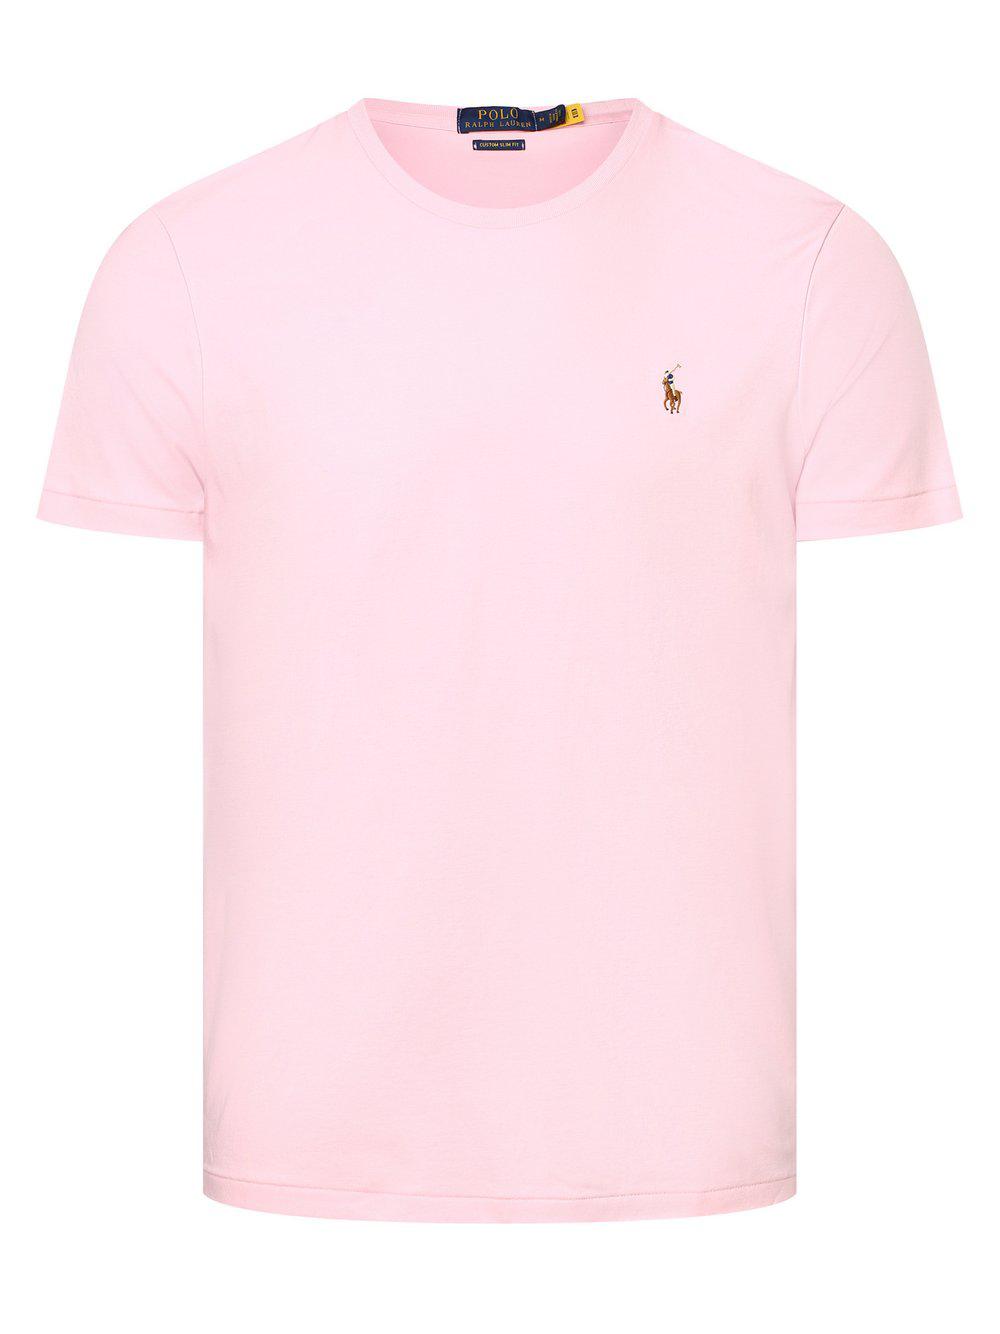 Polo Ralph Lauren T-Shirt Herren Baumwolle Rundhals, rosa von Polo Ralph Lauren